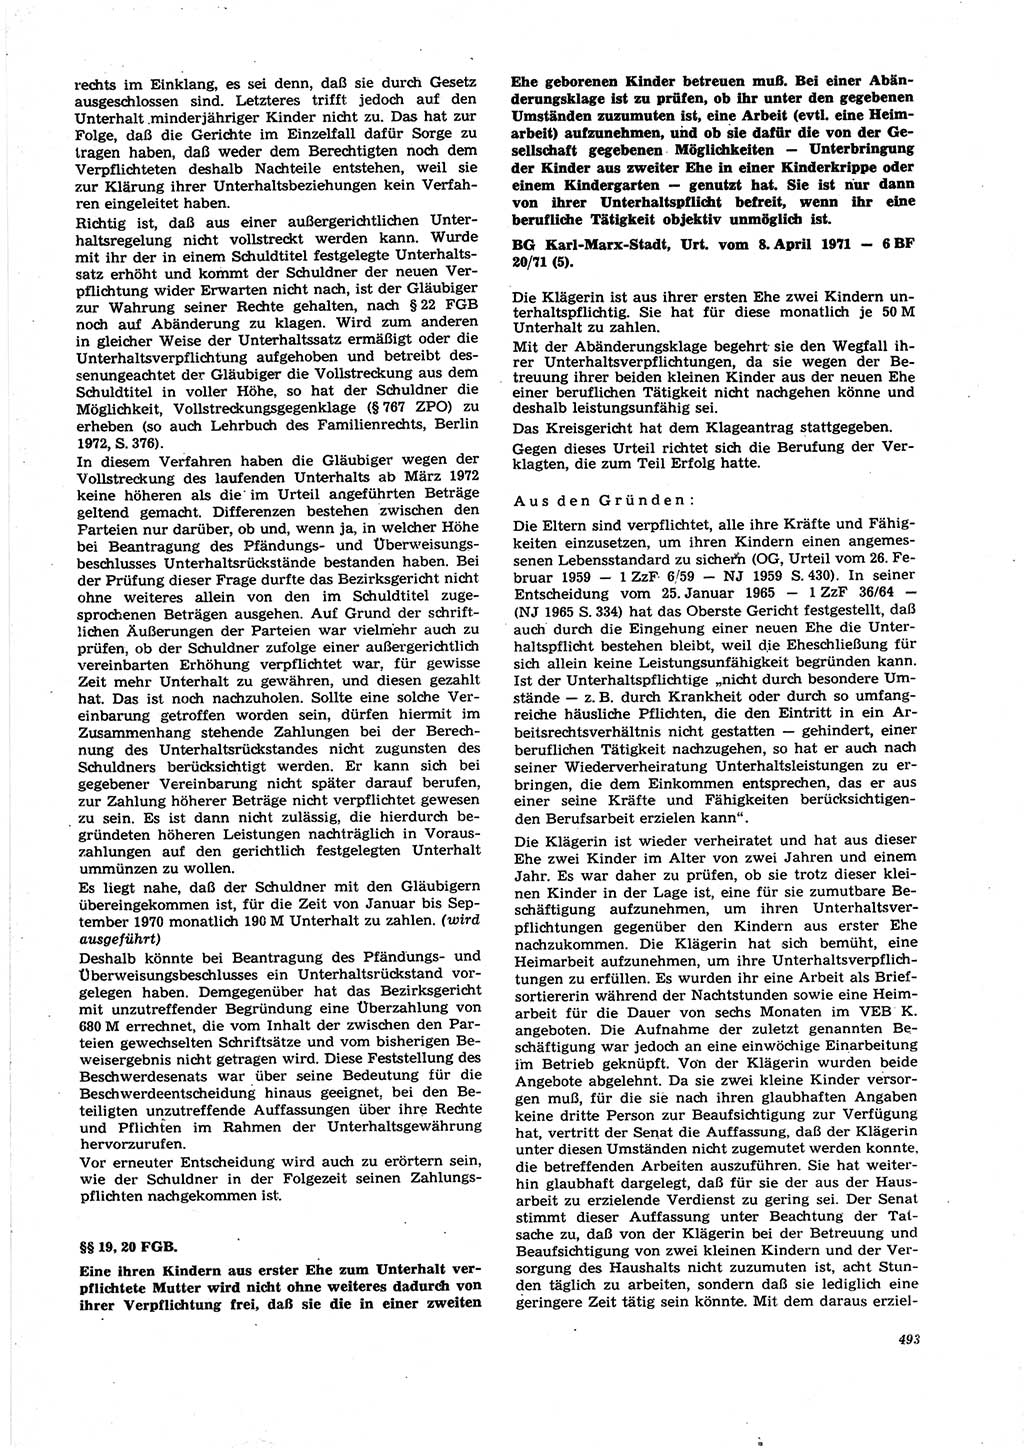 Neue Justiz (NJ), Zeitschrift für Recht und Rechtswissenschaft [Deutsche Demokratische Republik (DDR)], 27. Jahrgang 1973, Seite 493 (NJ DDR 1973, S. 493)